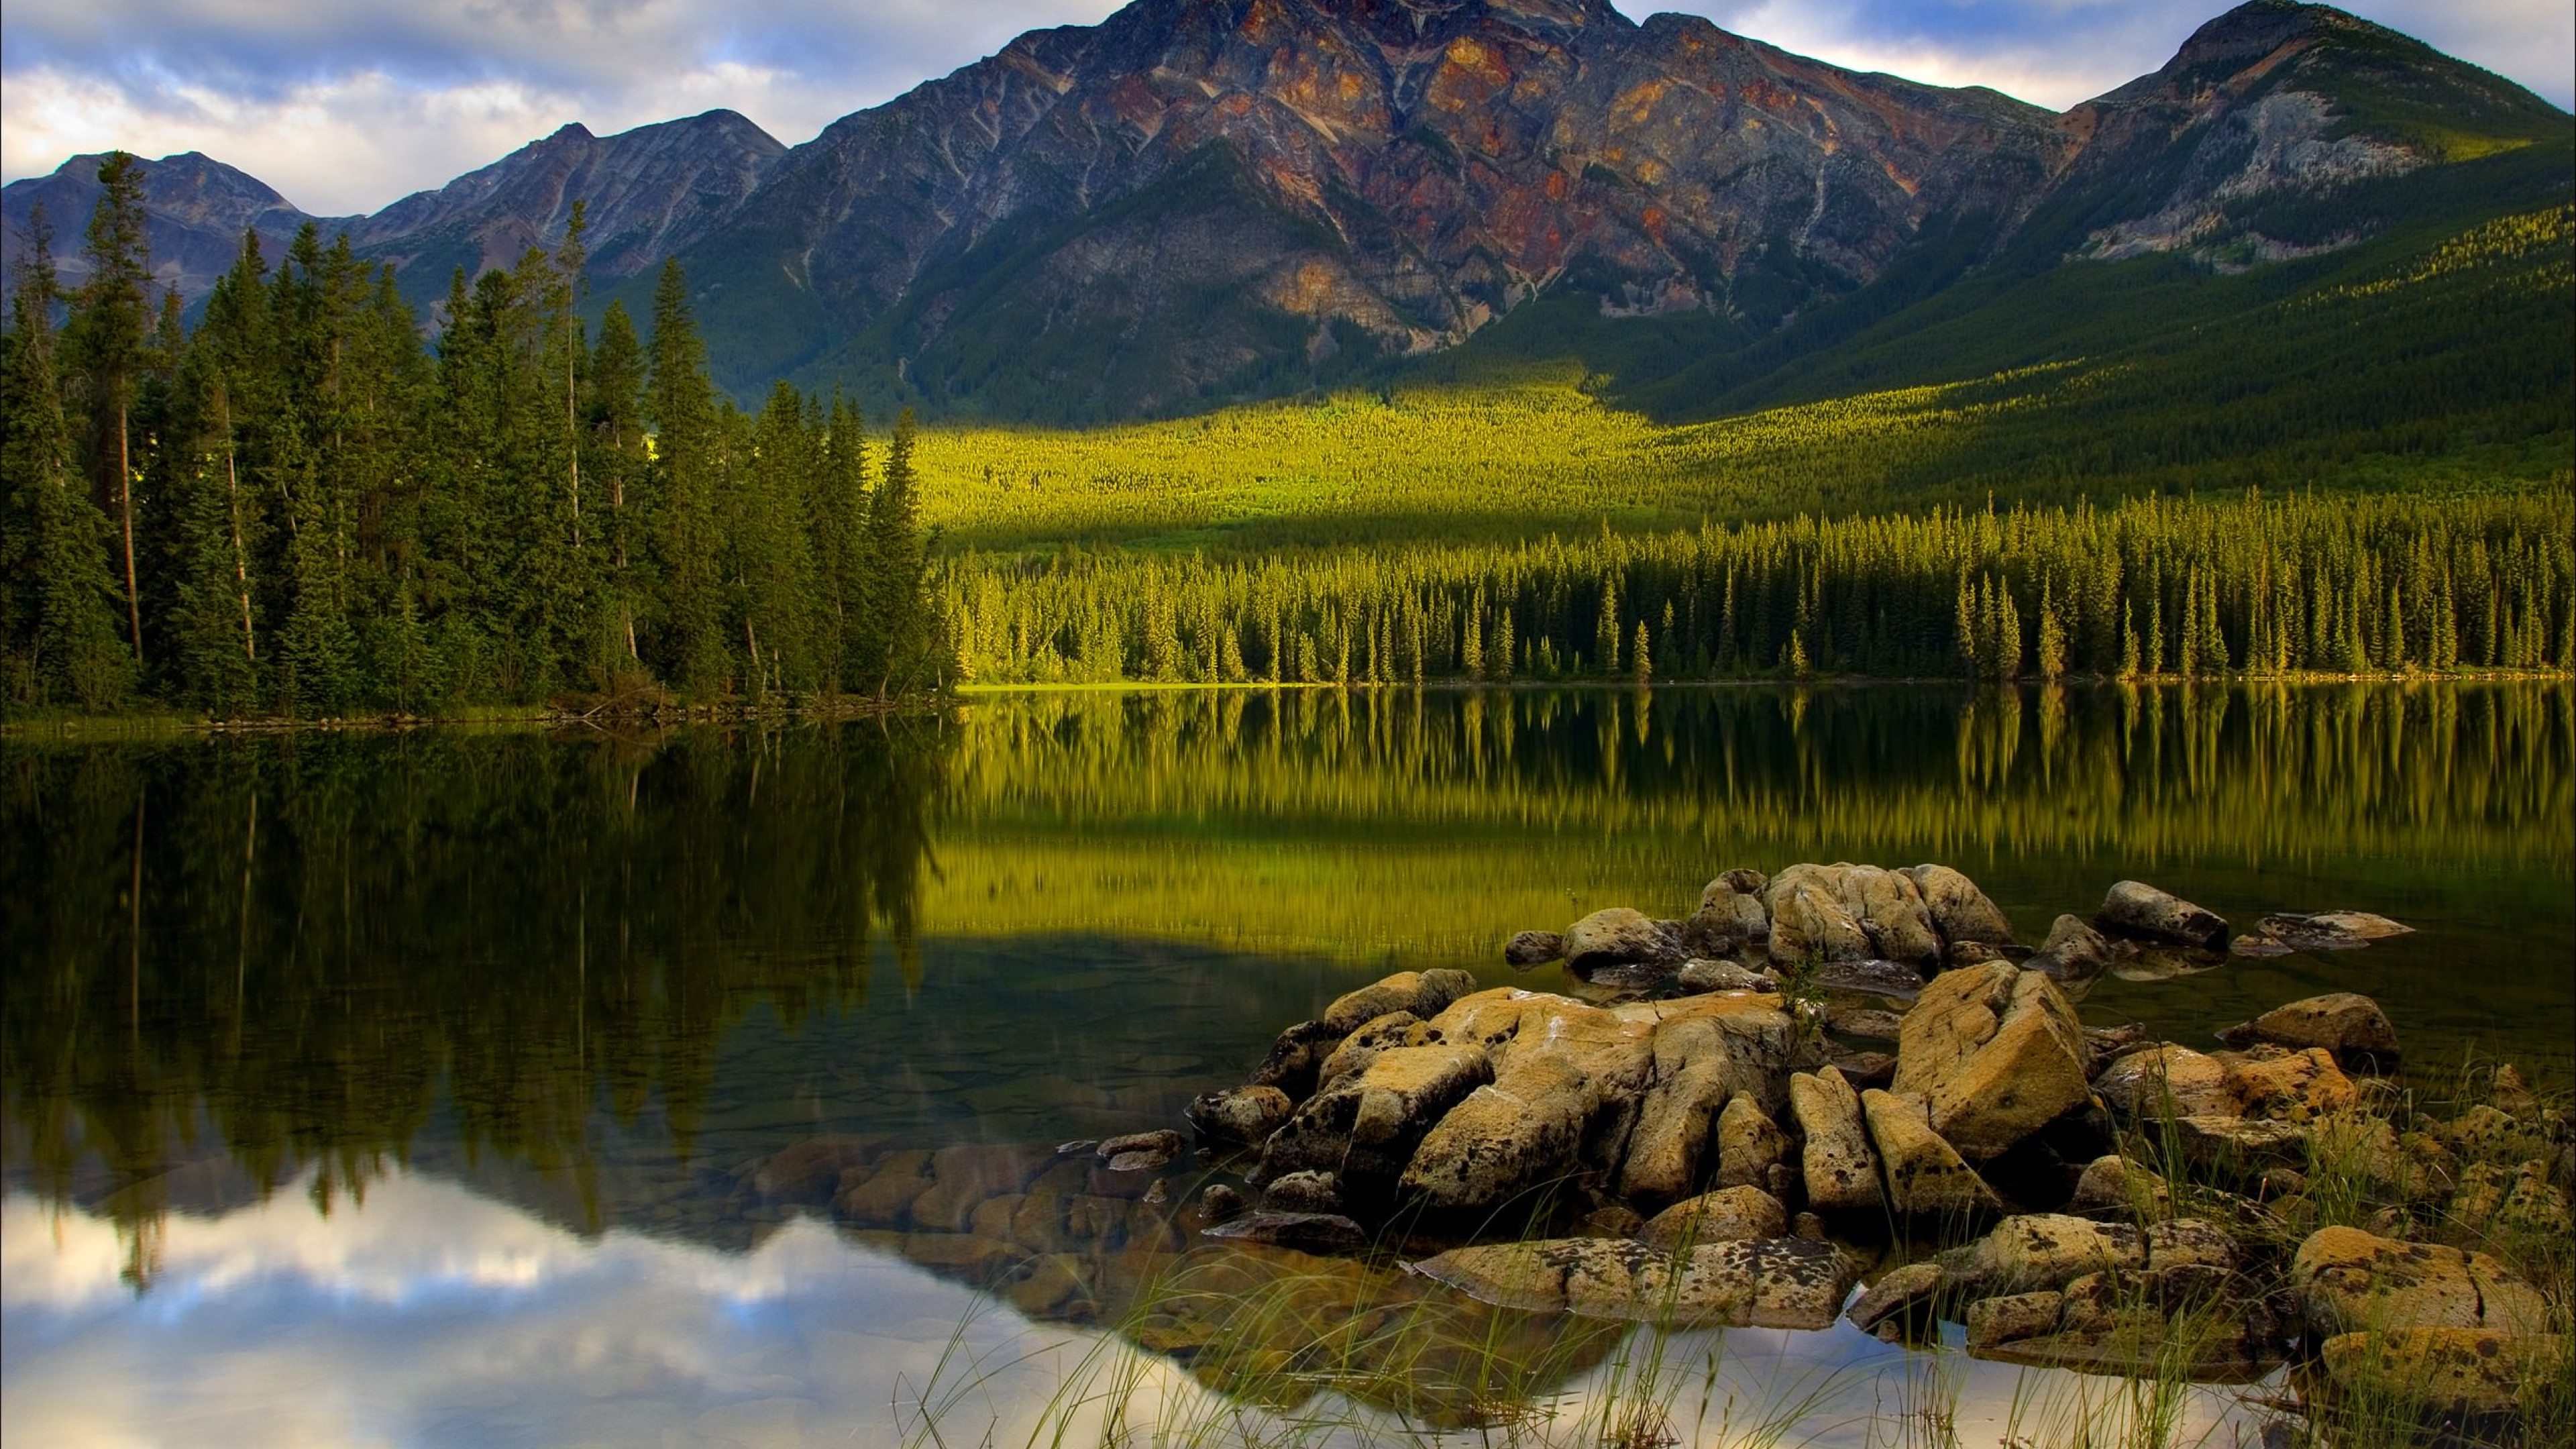 Interest in nature. Национальный парк джасперанады. Канада, Джаспер, озеро. Национальный парк Джаспер Канада фото.